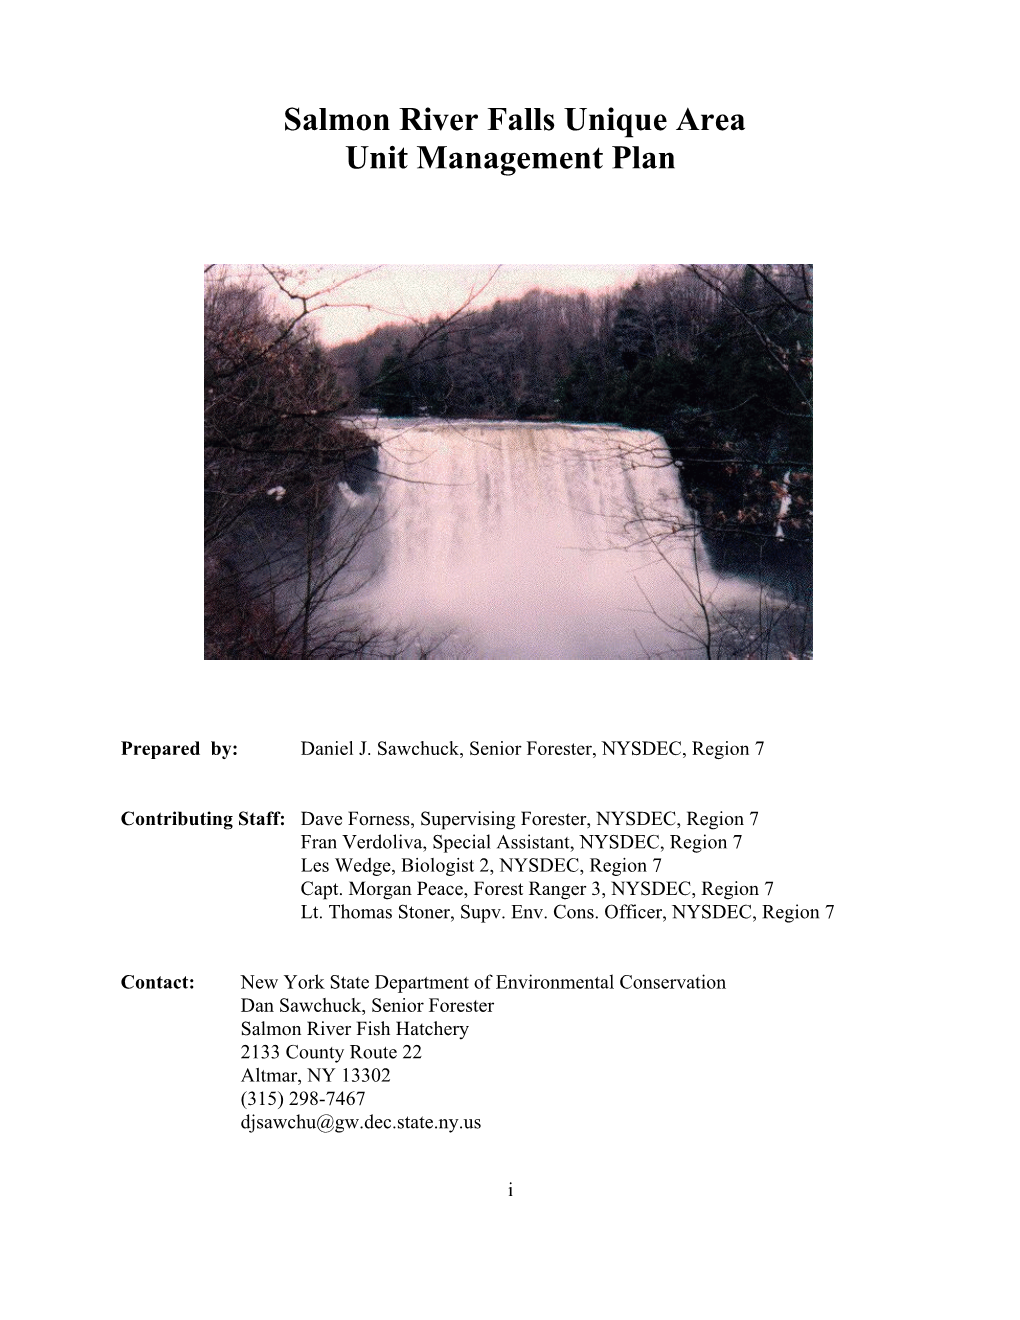 Salmon River Falls Unique Area Unit Management Plan